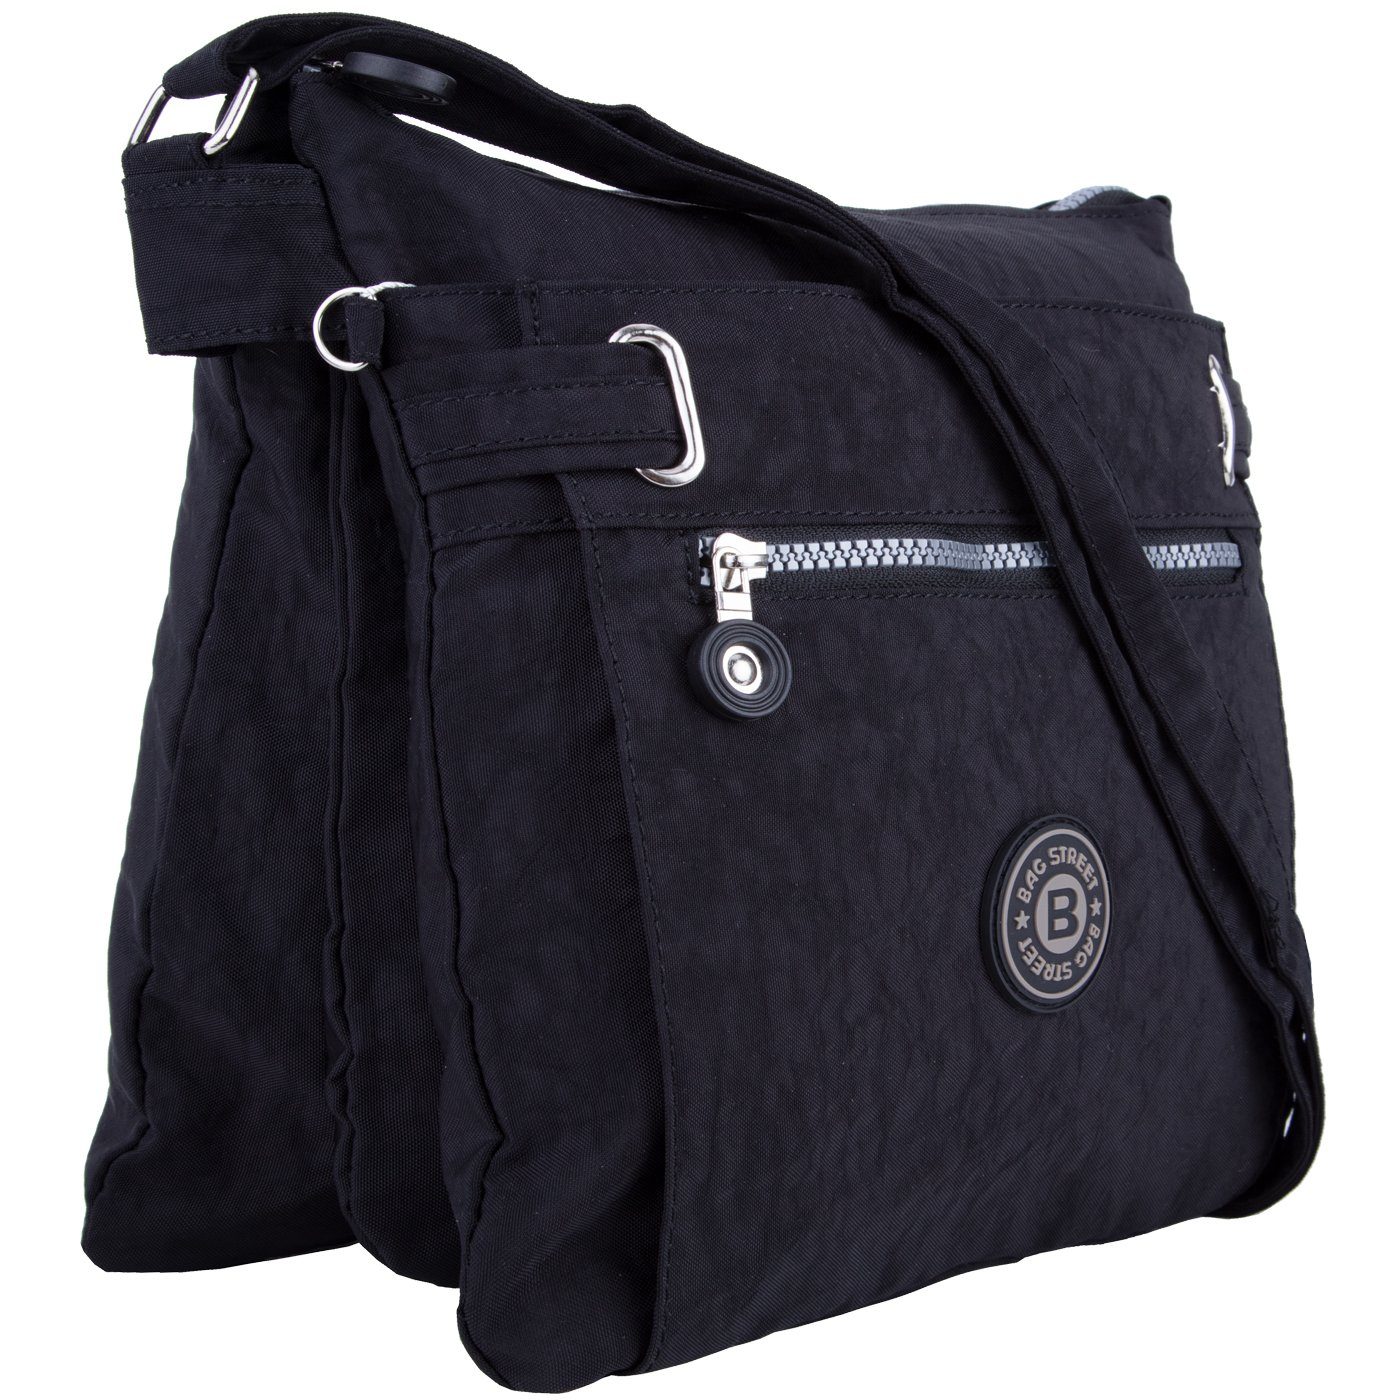 City-Tasche Kuriertasche Sportive Stauraum mit viel Umhänge-Tasche Urlaub Henkeltasche, Bag compagno schwarz 3-Fächer Reise